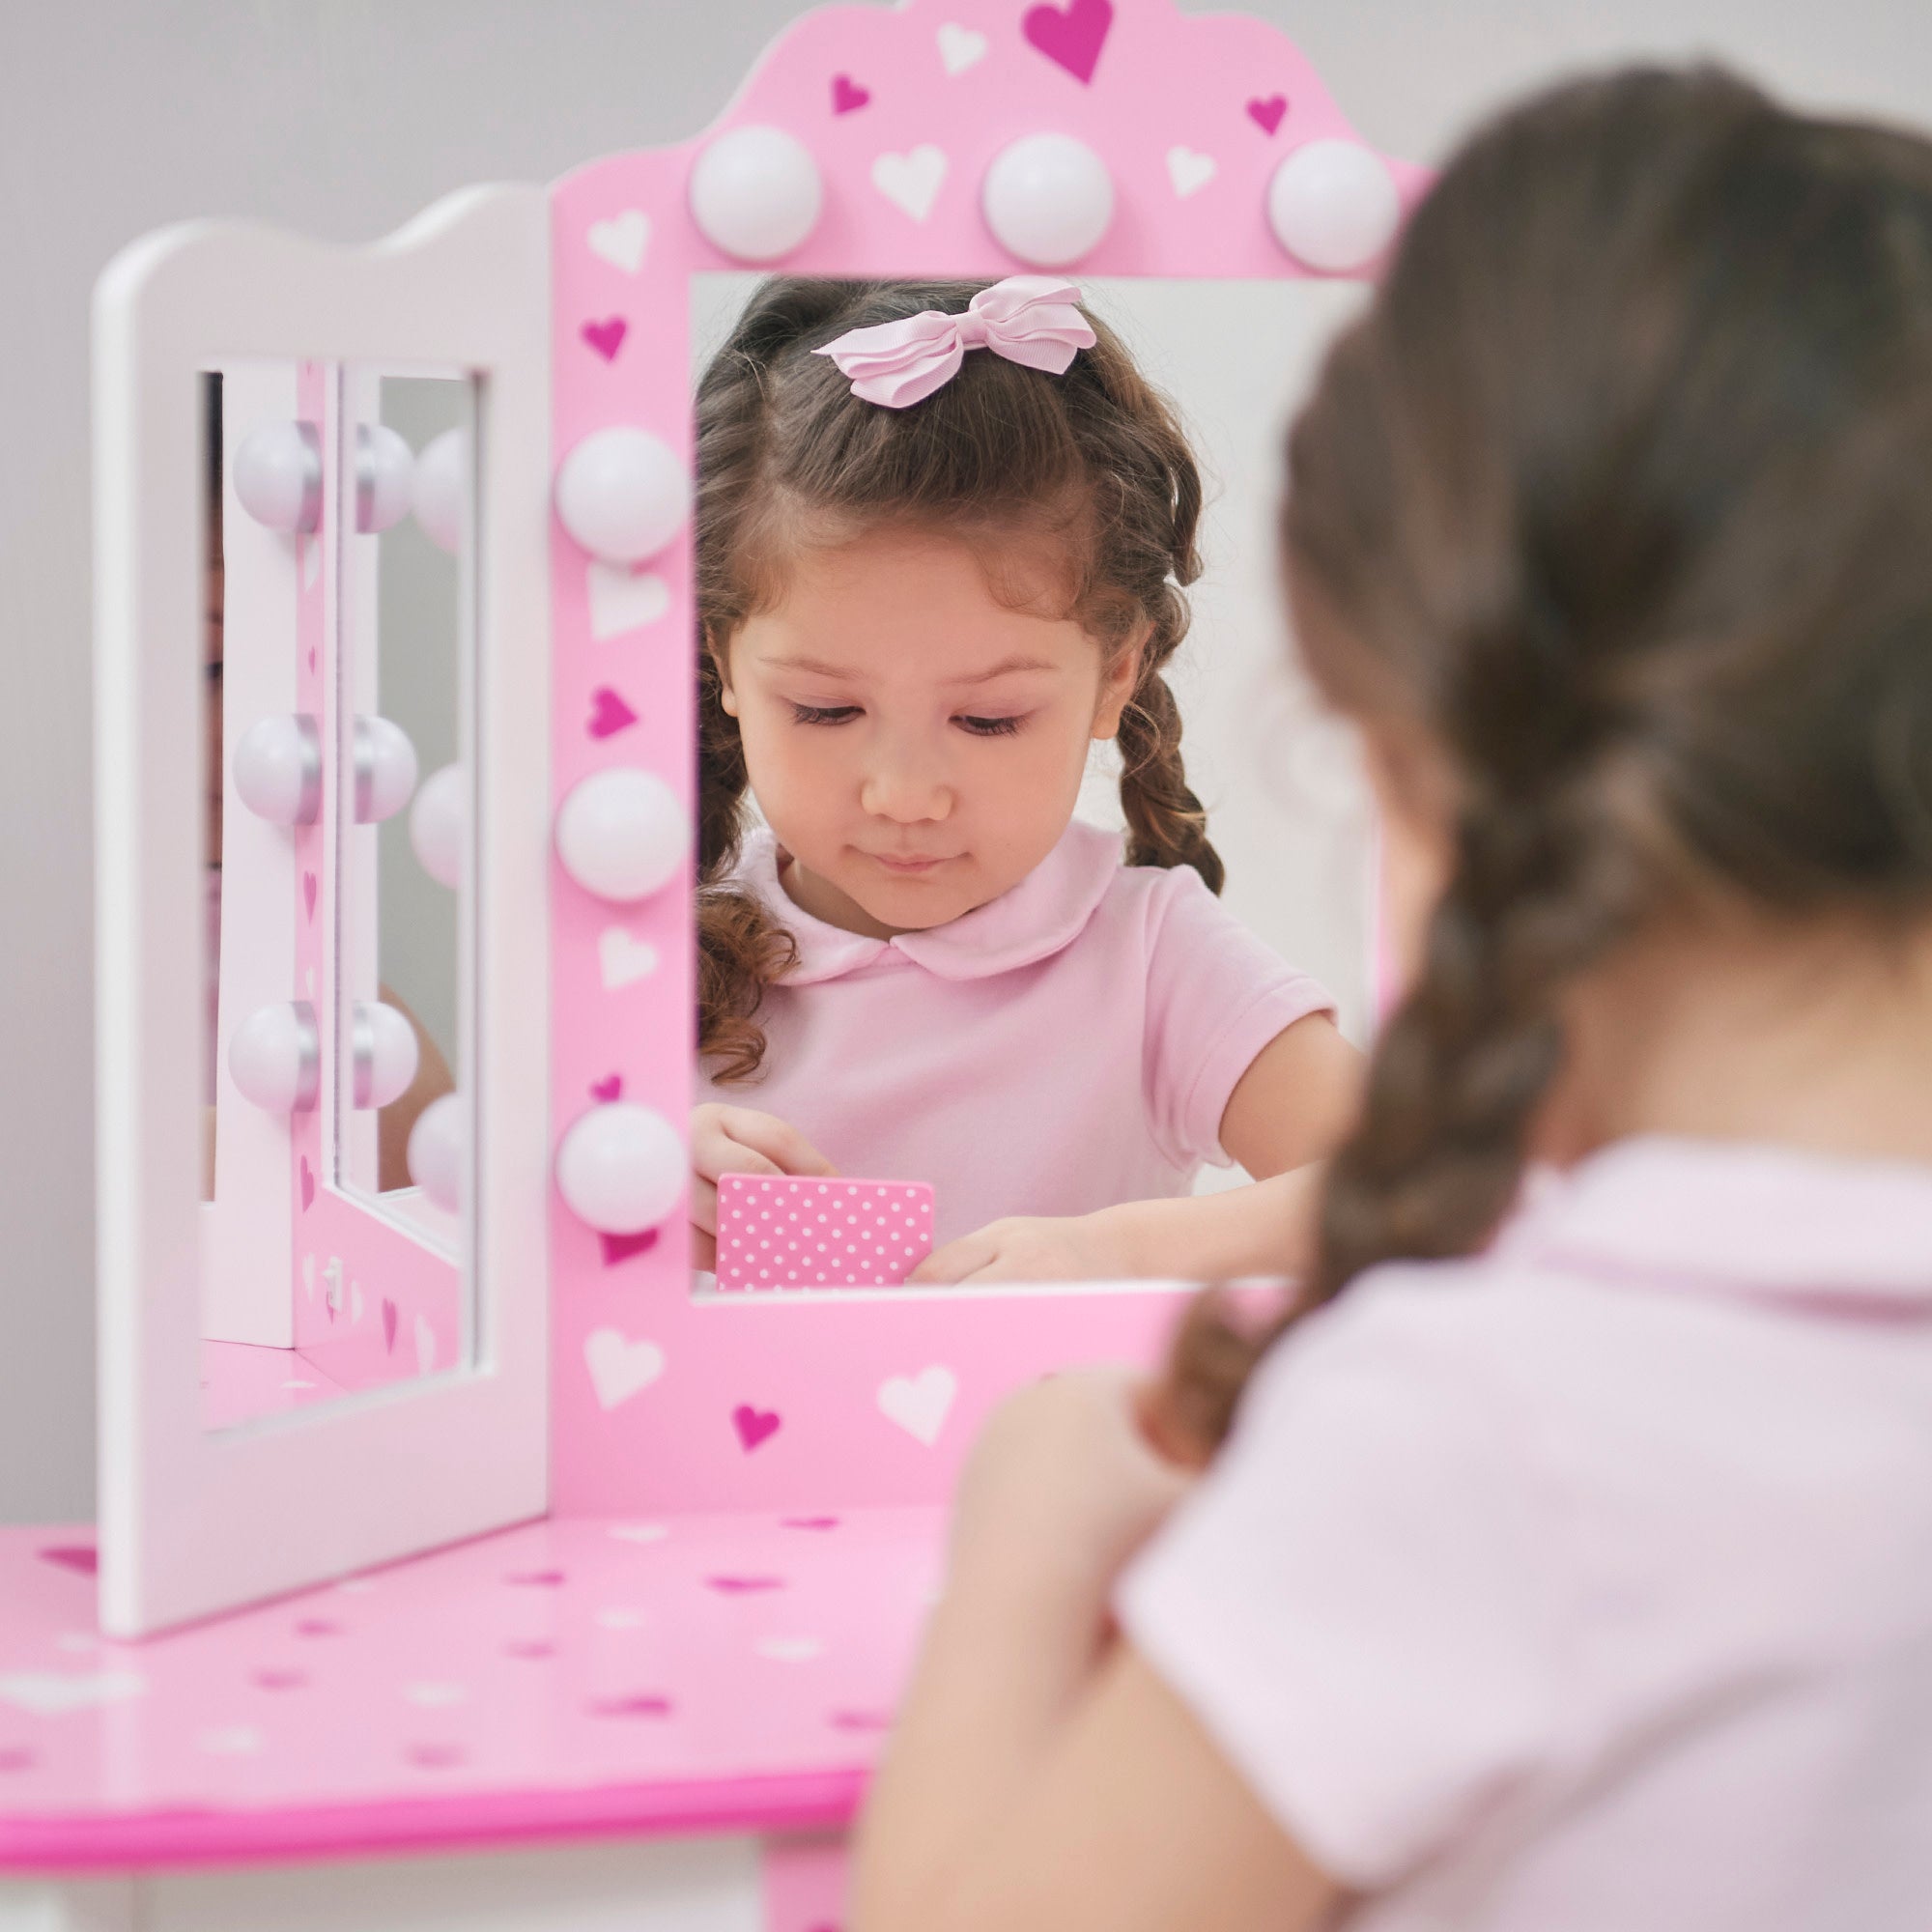 Kids Vanity Sets: Makeup Tables & Princess Vanities - Teamson